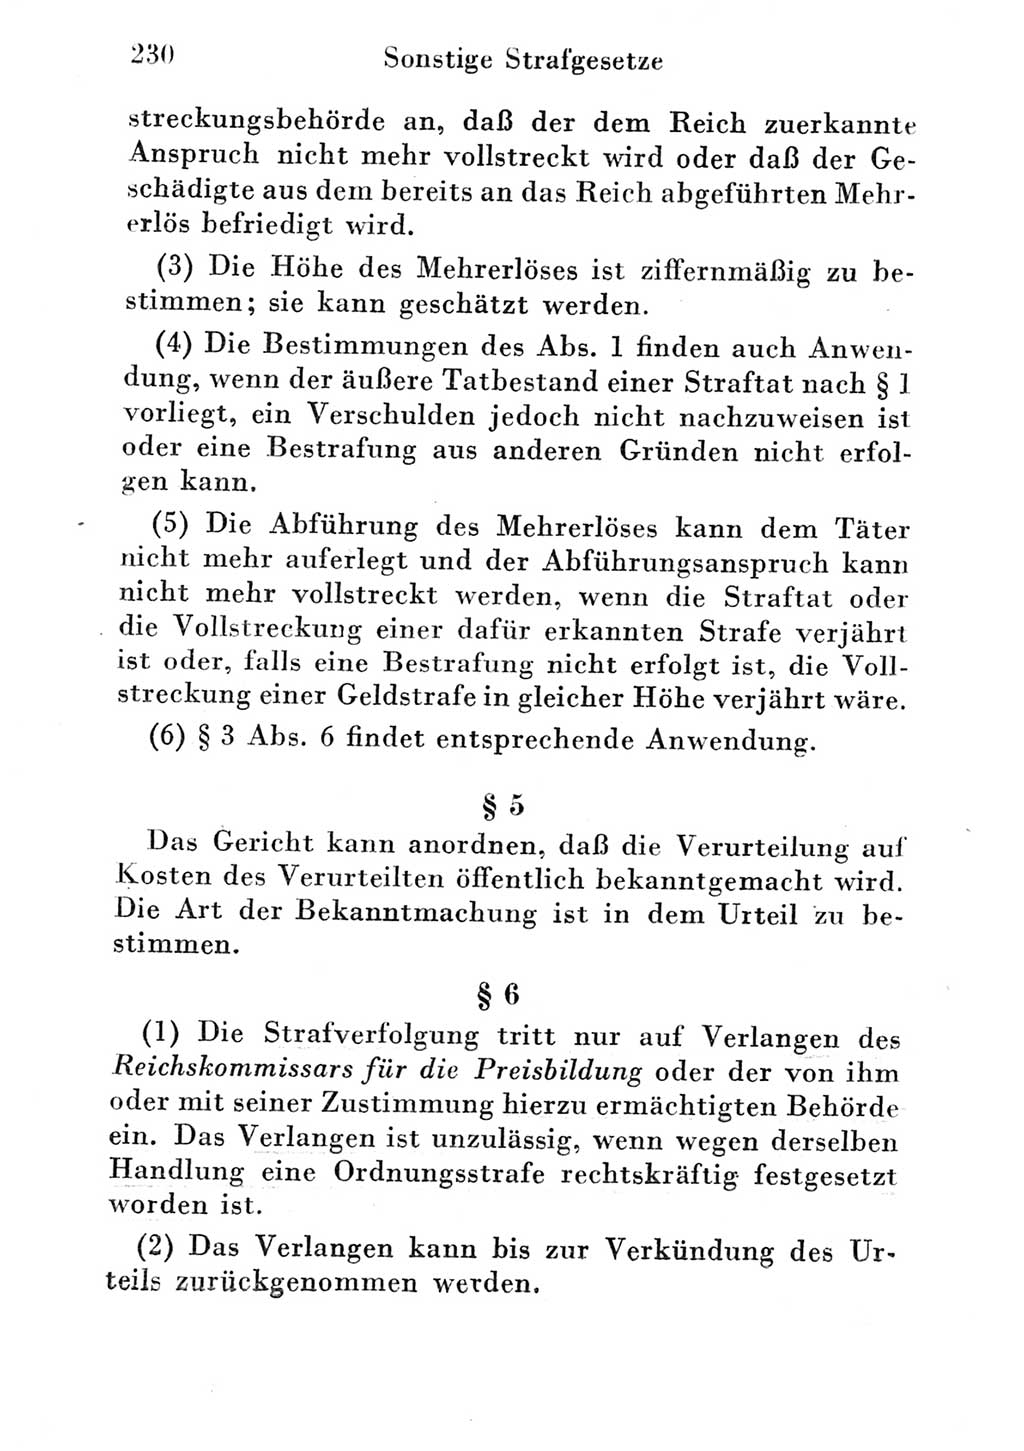 Strafgesetzbuch (StGB) und andere Strafgesetze [Deutsche Demokratische Republik (DDR)] 1951, Seite 230 (StGB Strafges. DDR 1951, S. 230)